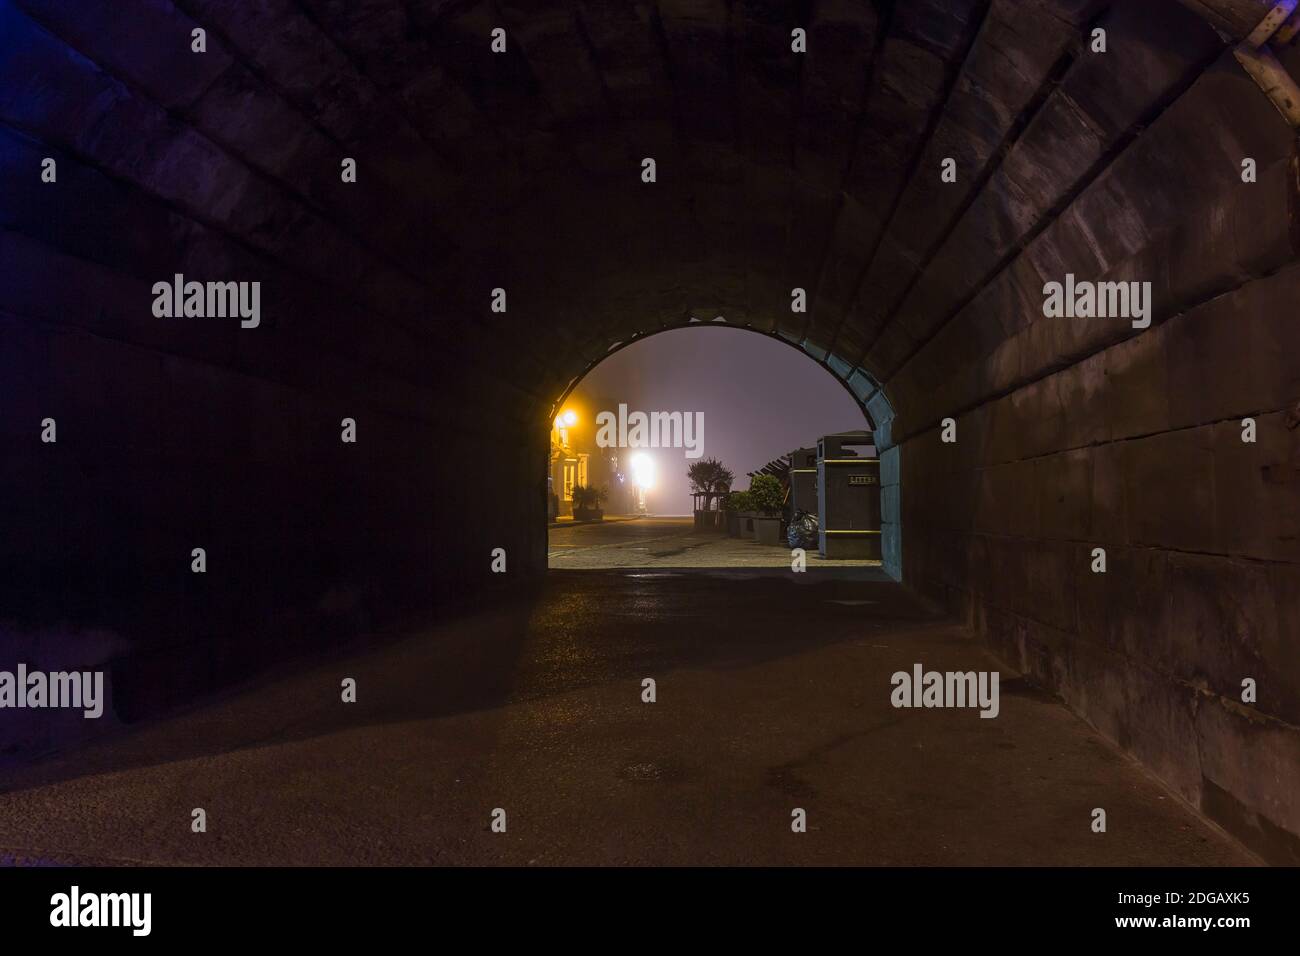 Stimmungsvolle, abendliche Straßenszene mit Blick durch einen alten Backsteintunnel bei Nacht. Blick auf die Straßenlaterne durch einen dunklen Steintunnel. Stockfoto